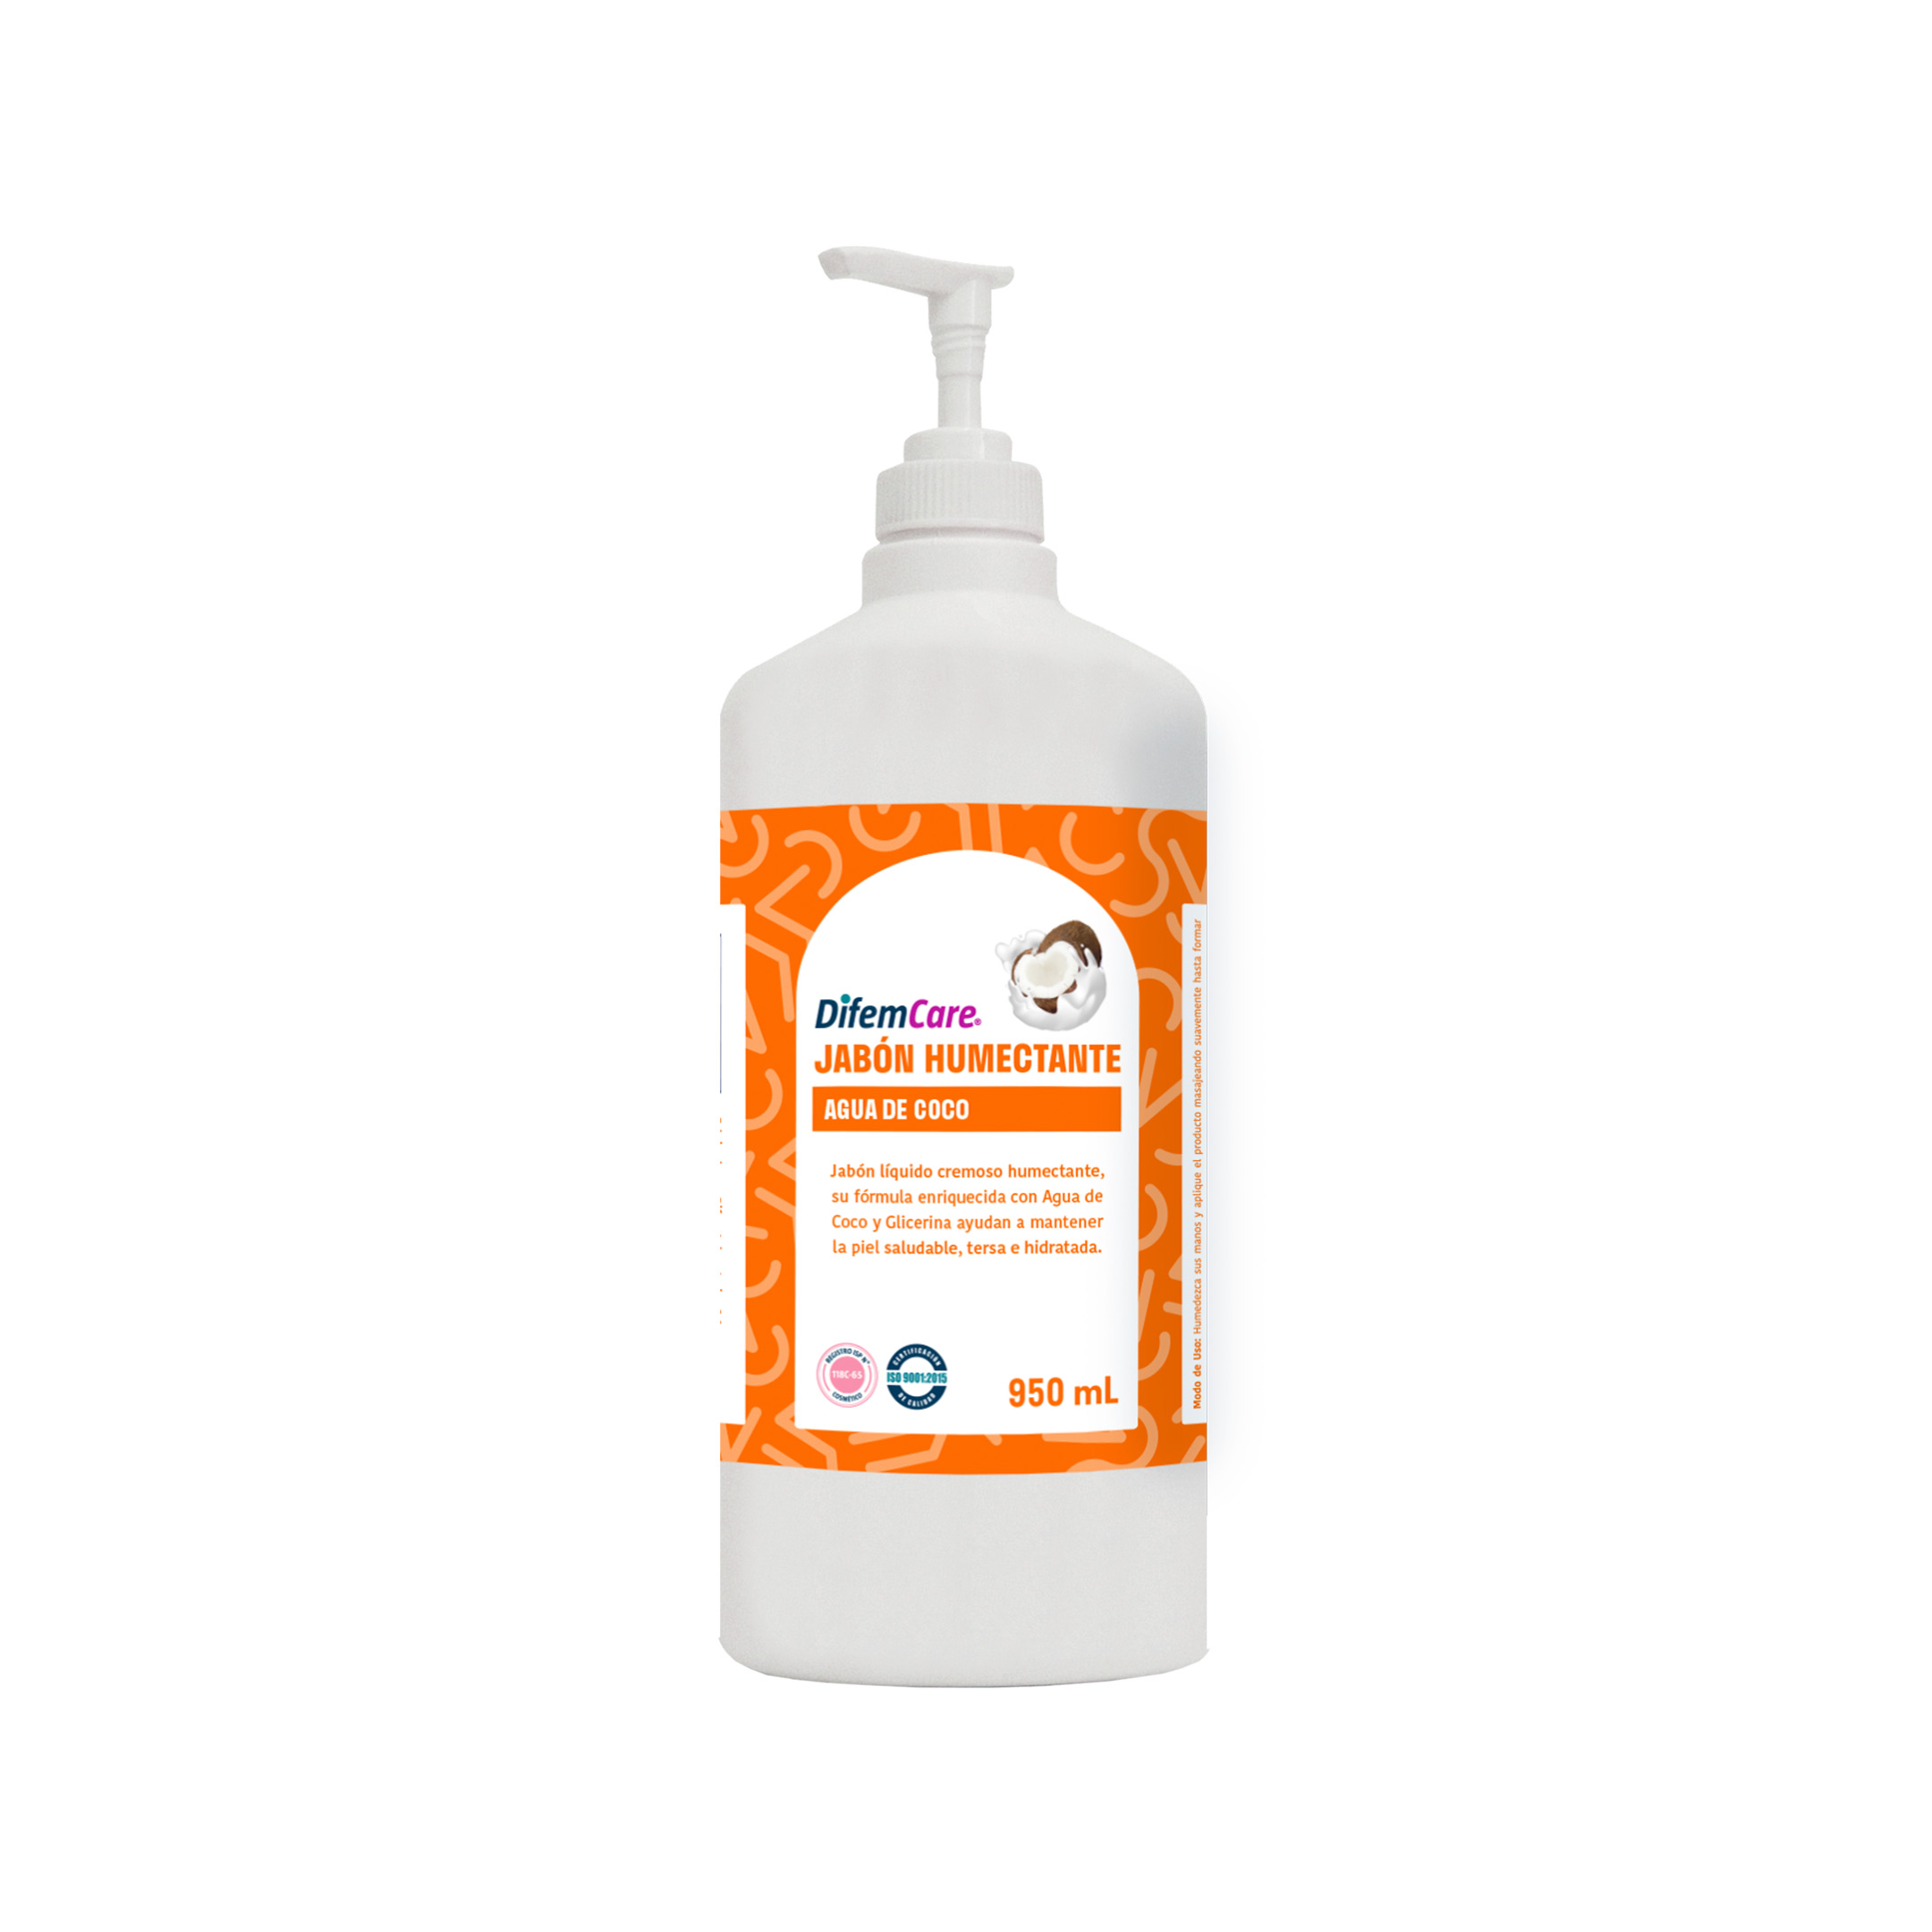 Jabón líquido cremoso humectante. Su fórmula enriquecida con Agua de coco y Glicerina ayuda a mantener la piel saludable, tersa e hidratada.